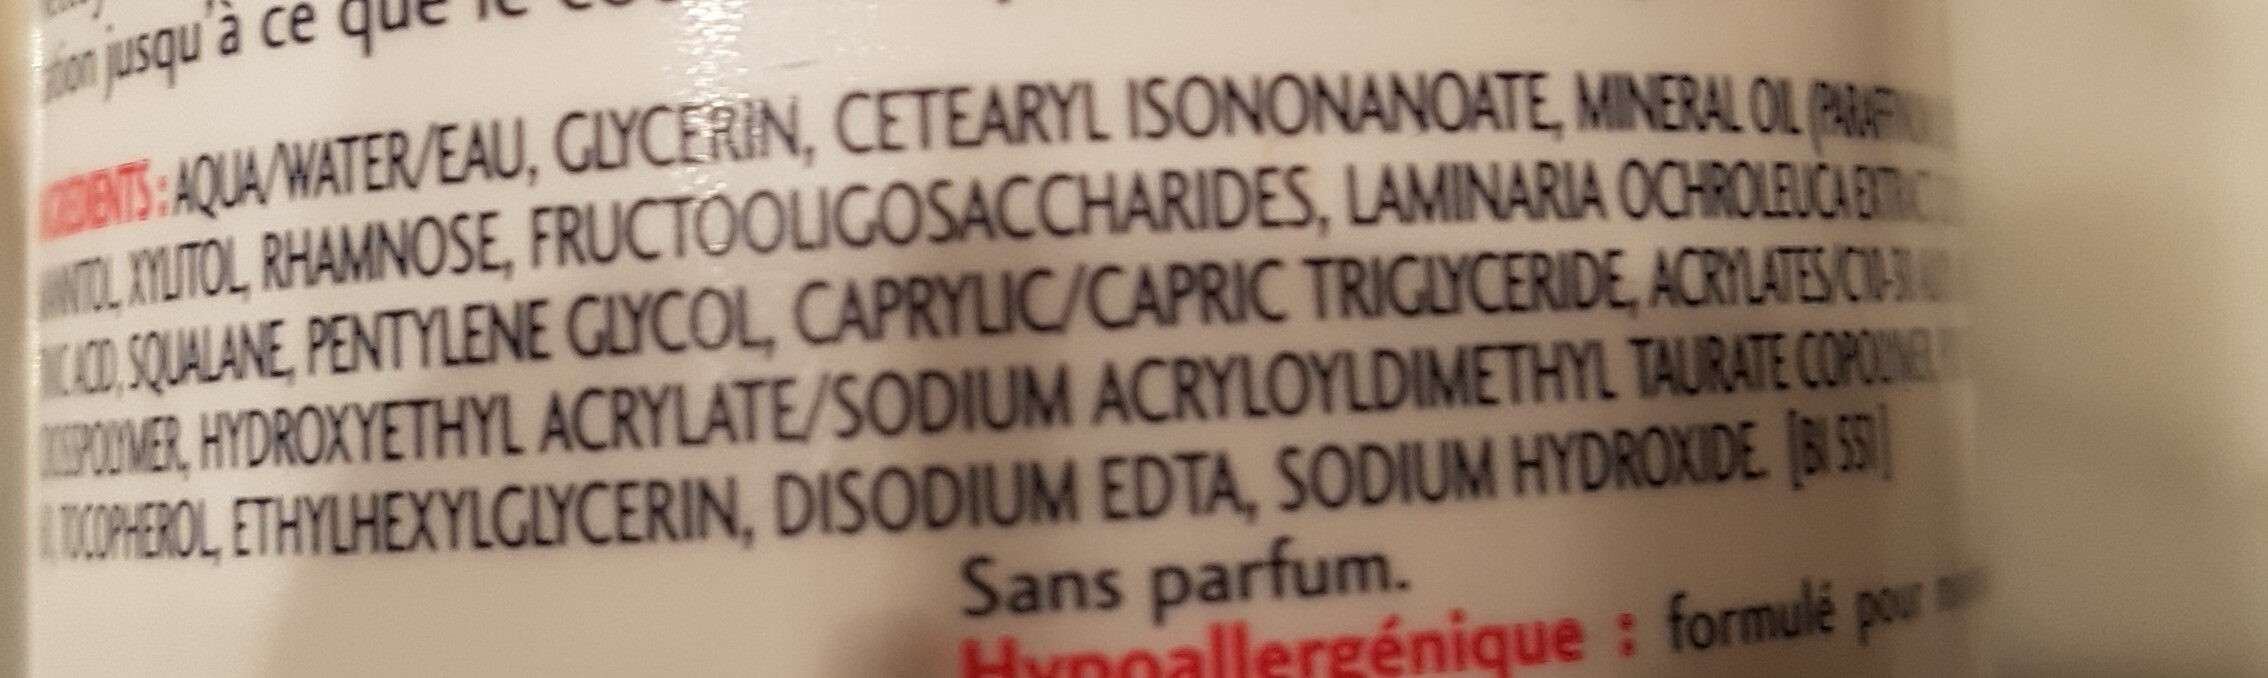 Créaline lait - Ingredients - fr